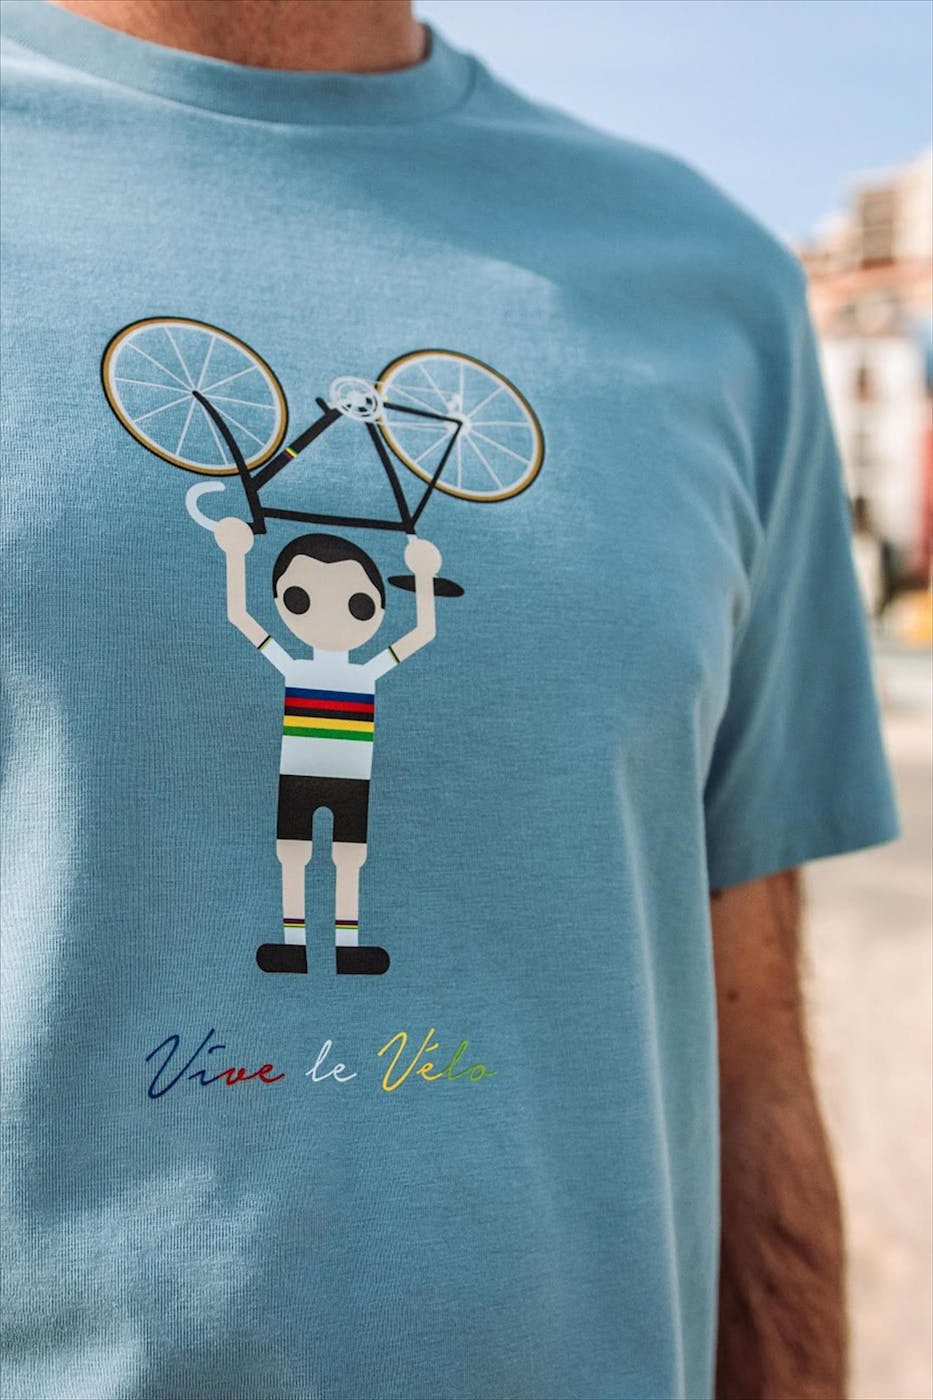 Vive le vélo - Grijsblauwe World Champion T-shirt